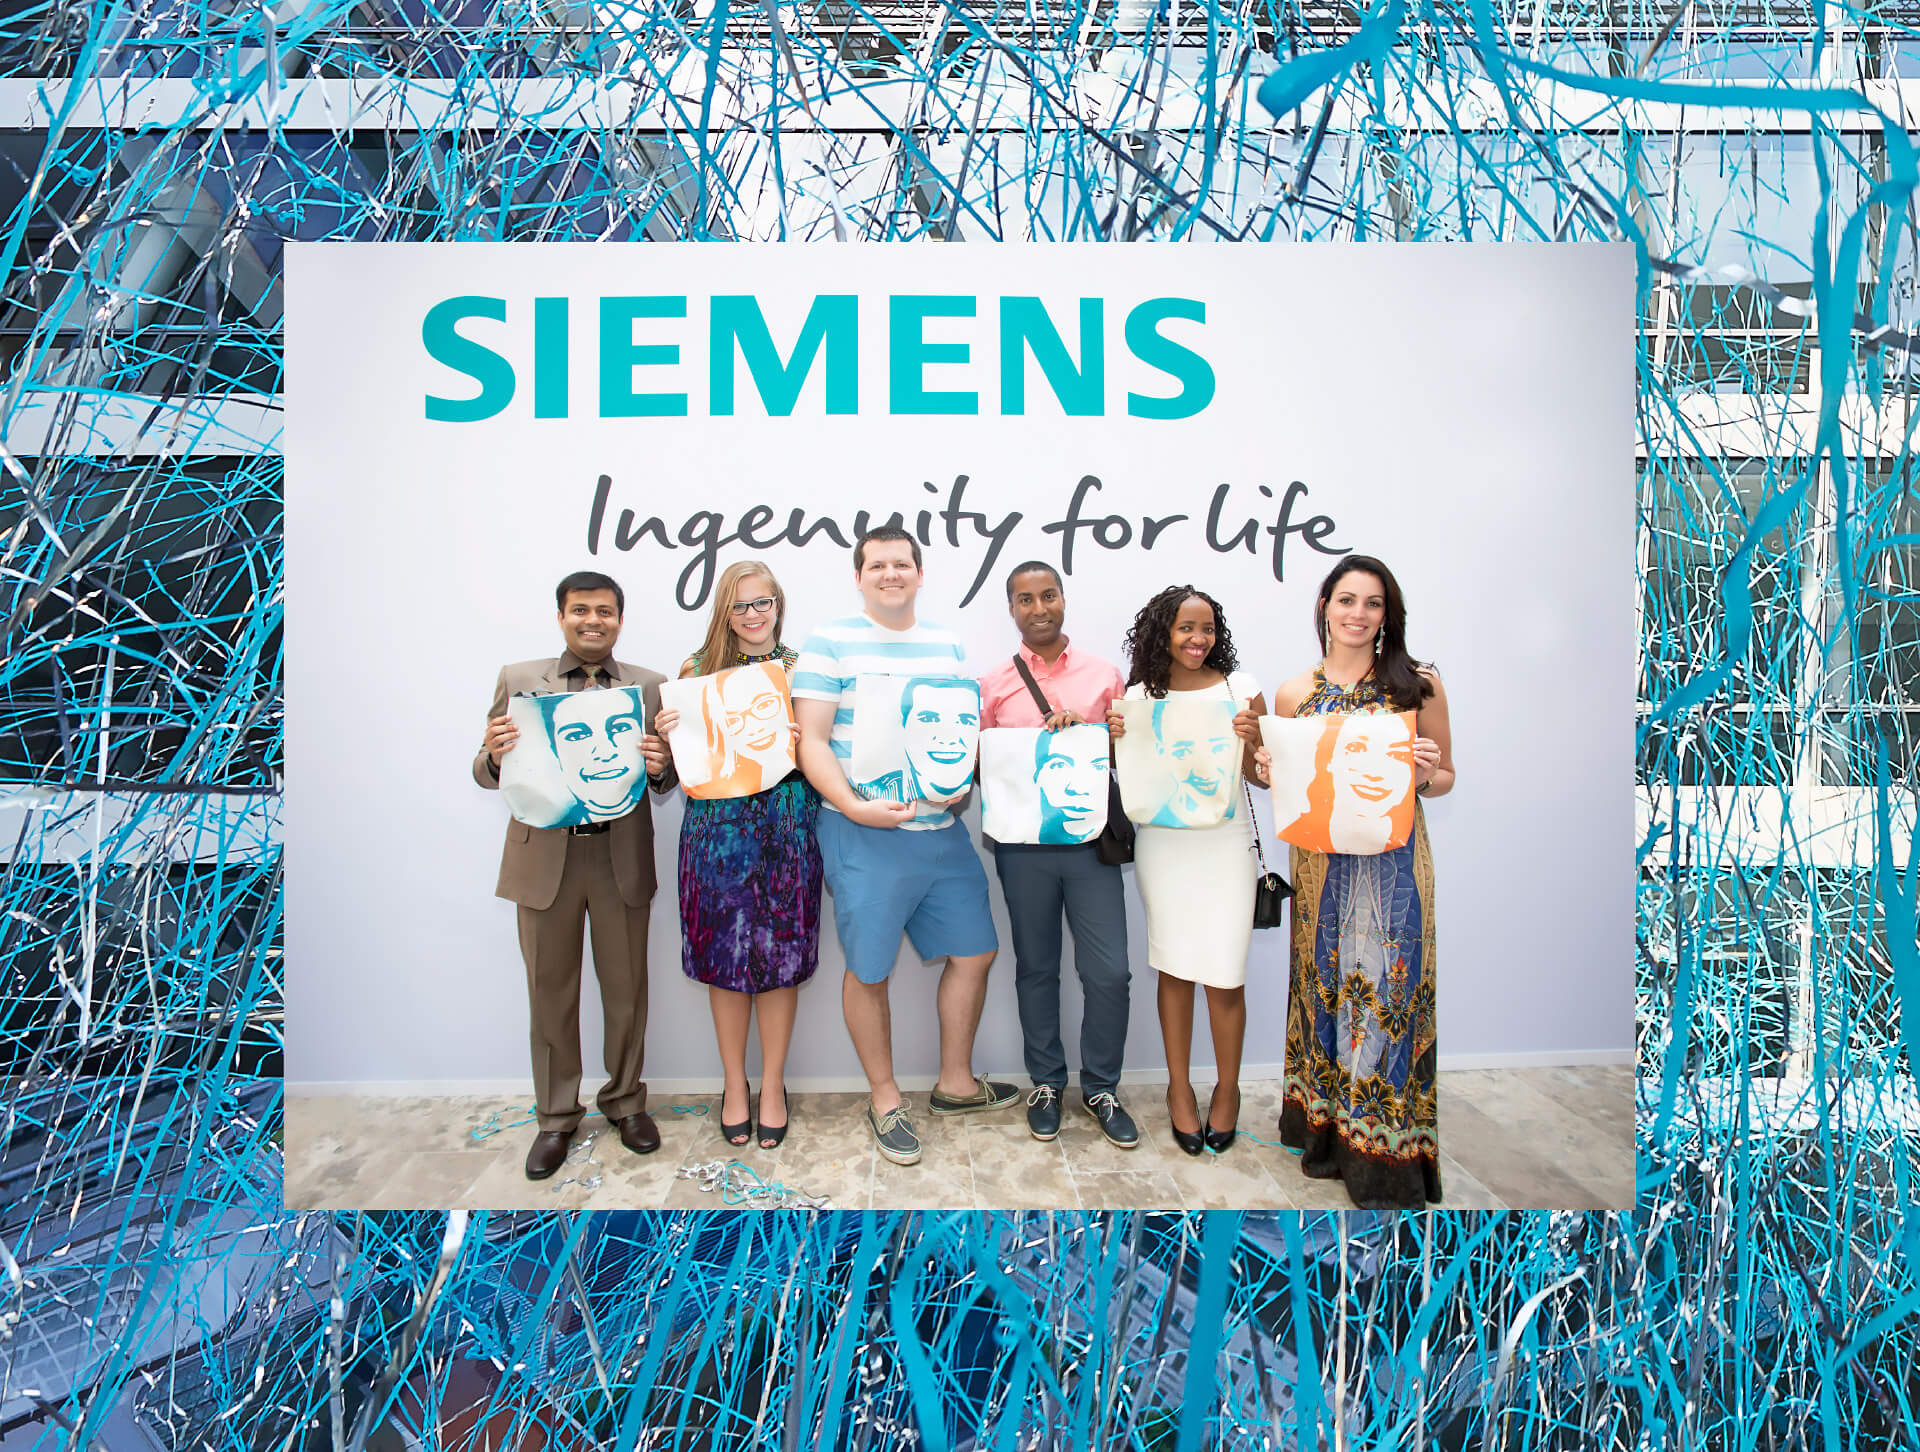 Siemensmitarbeiter mit Bauzauntasche vor Siemensschriftzug